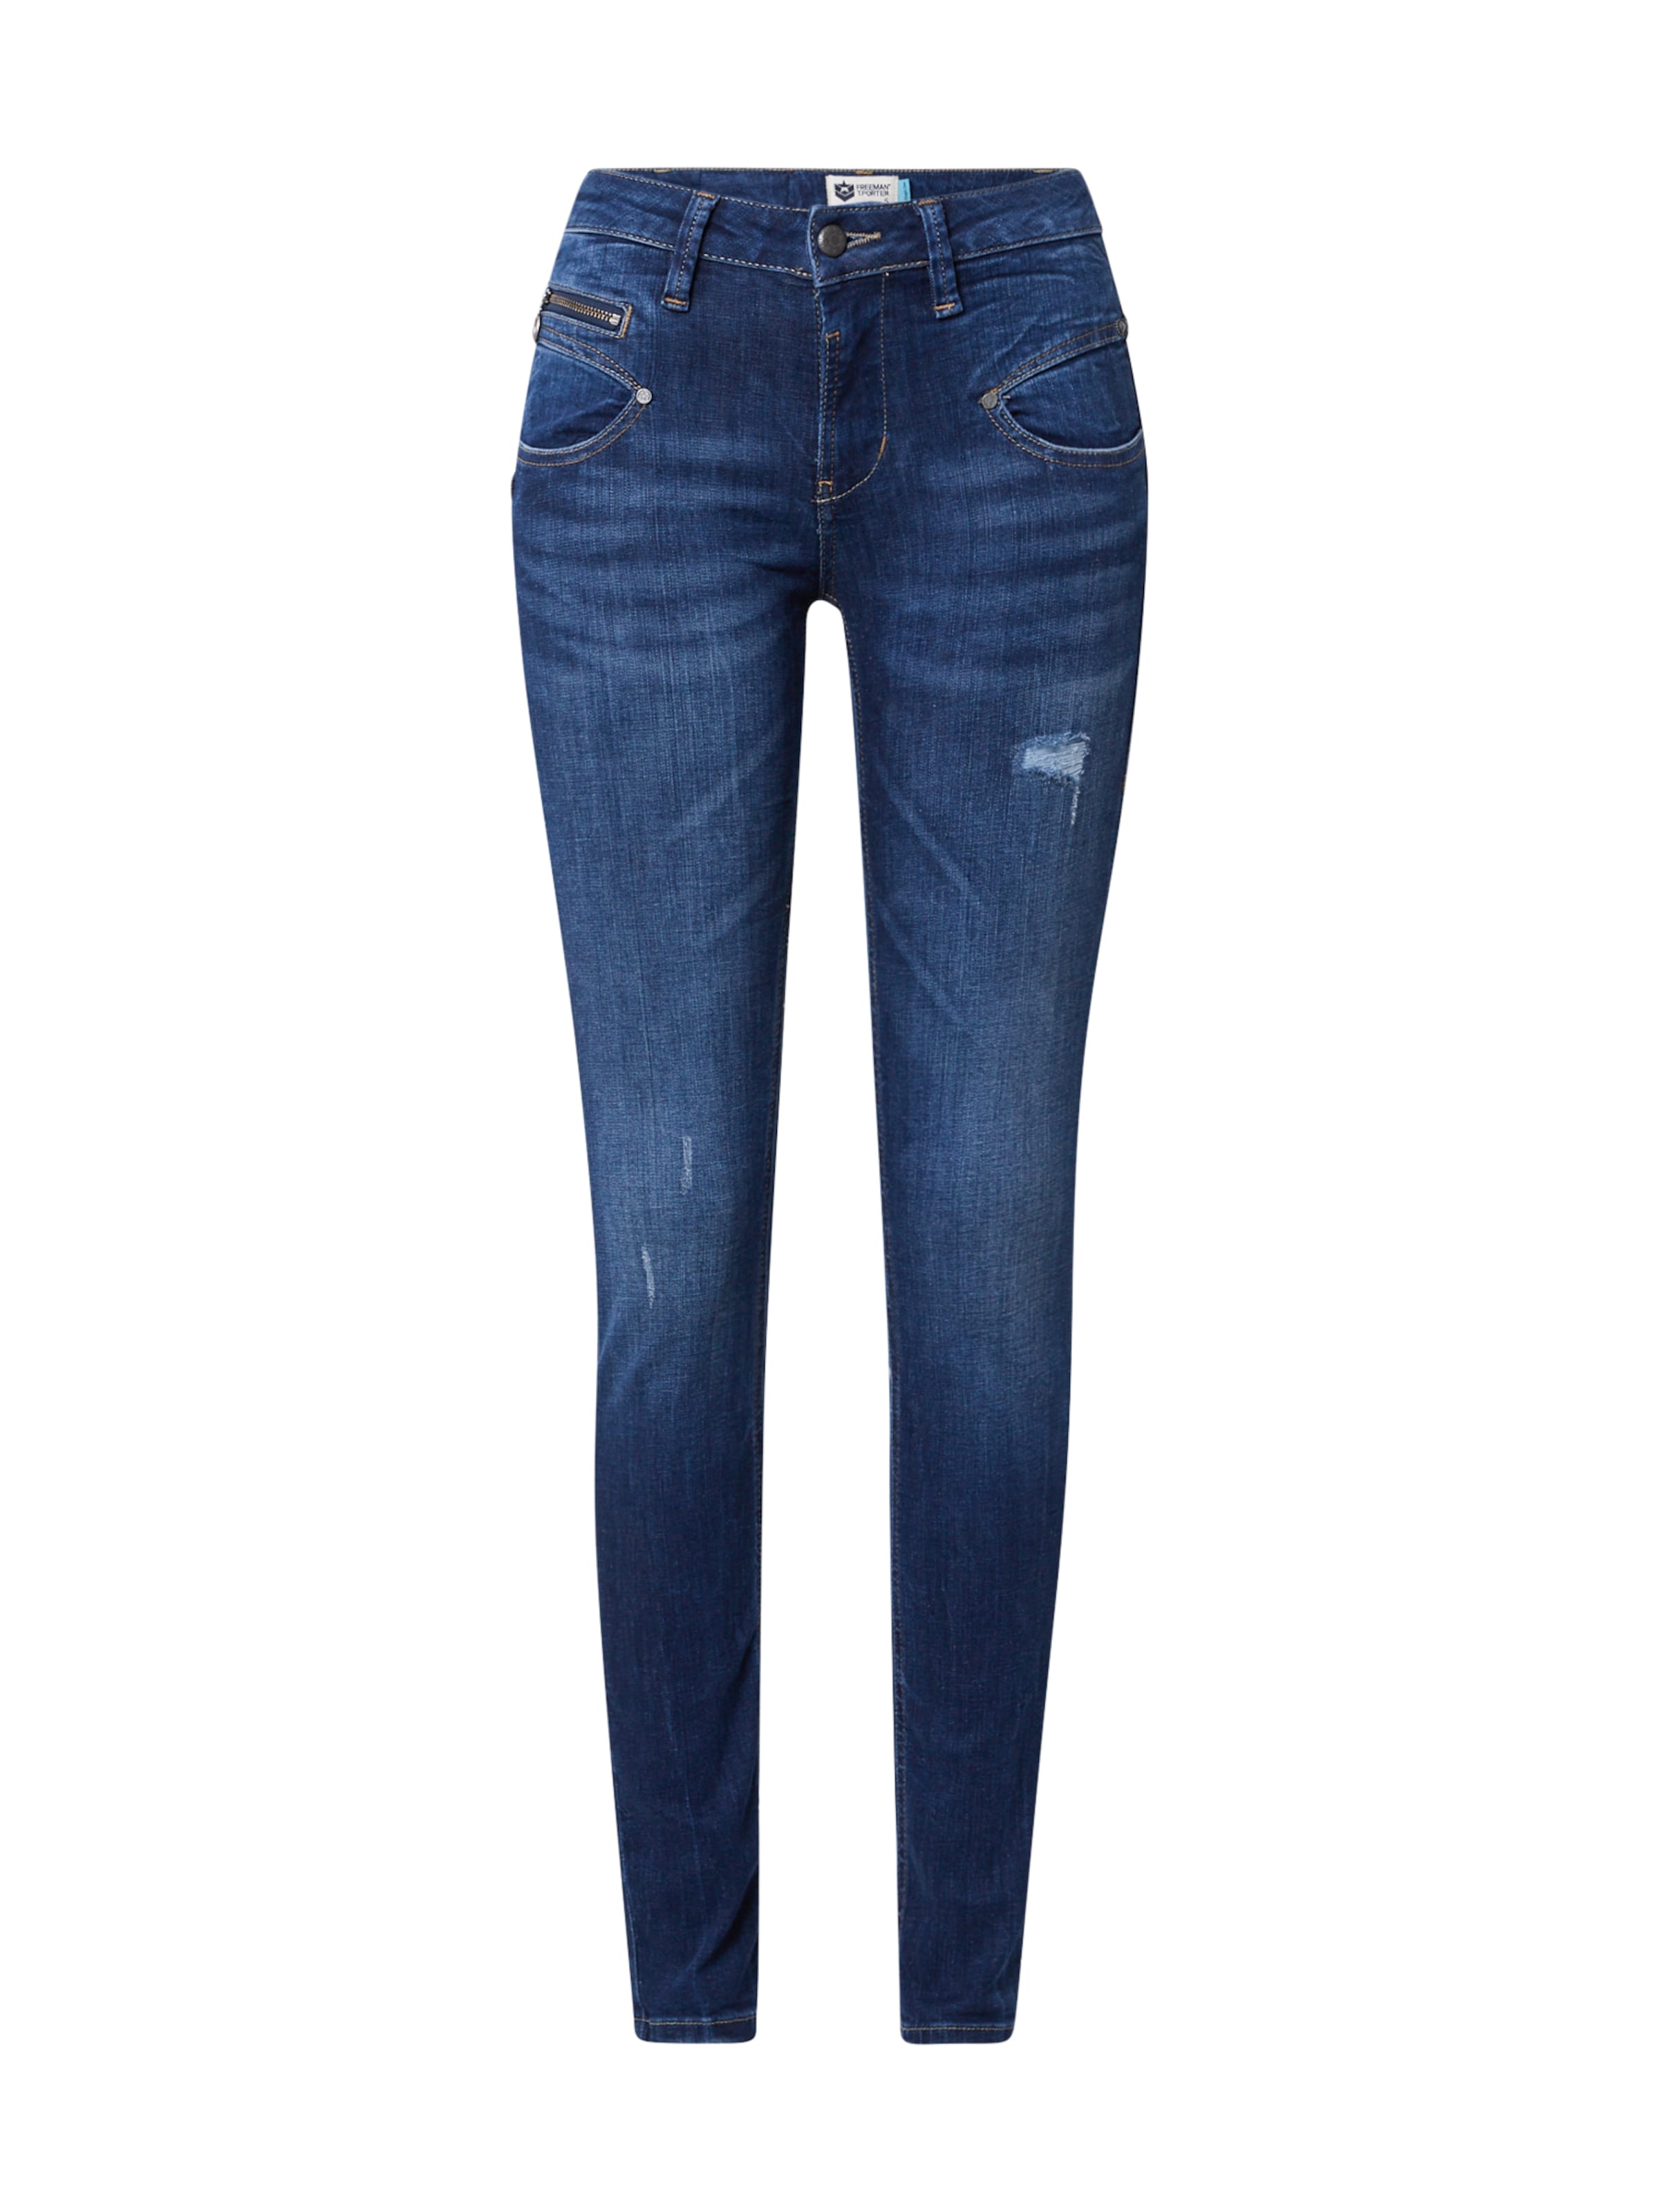 Abbigliamento Donna FREEMAN T. PORTER Jeans Alexa in Blu Scuro 